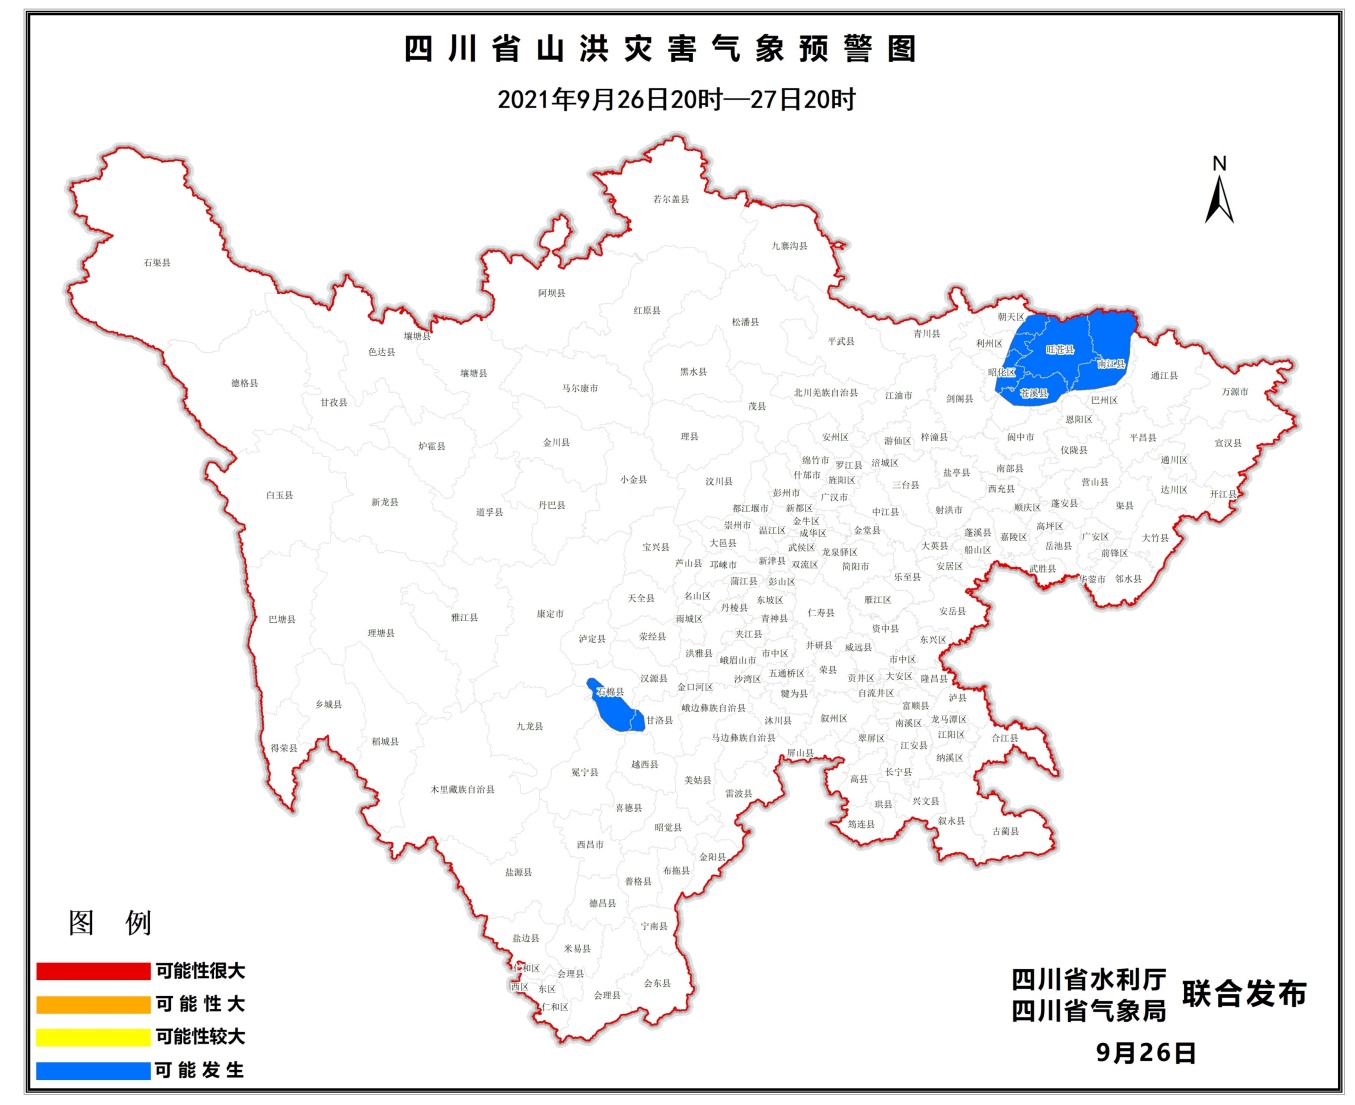 四川连续三天发布山洪灾害蓝色预警 这些县（市、区）须特别注意